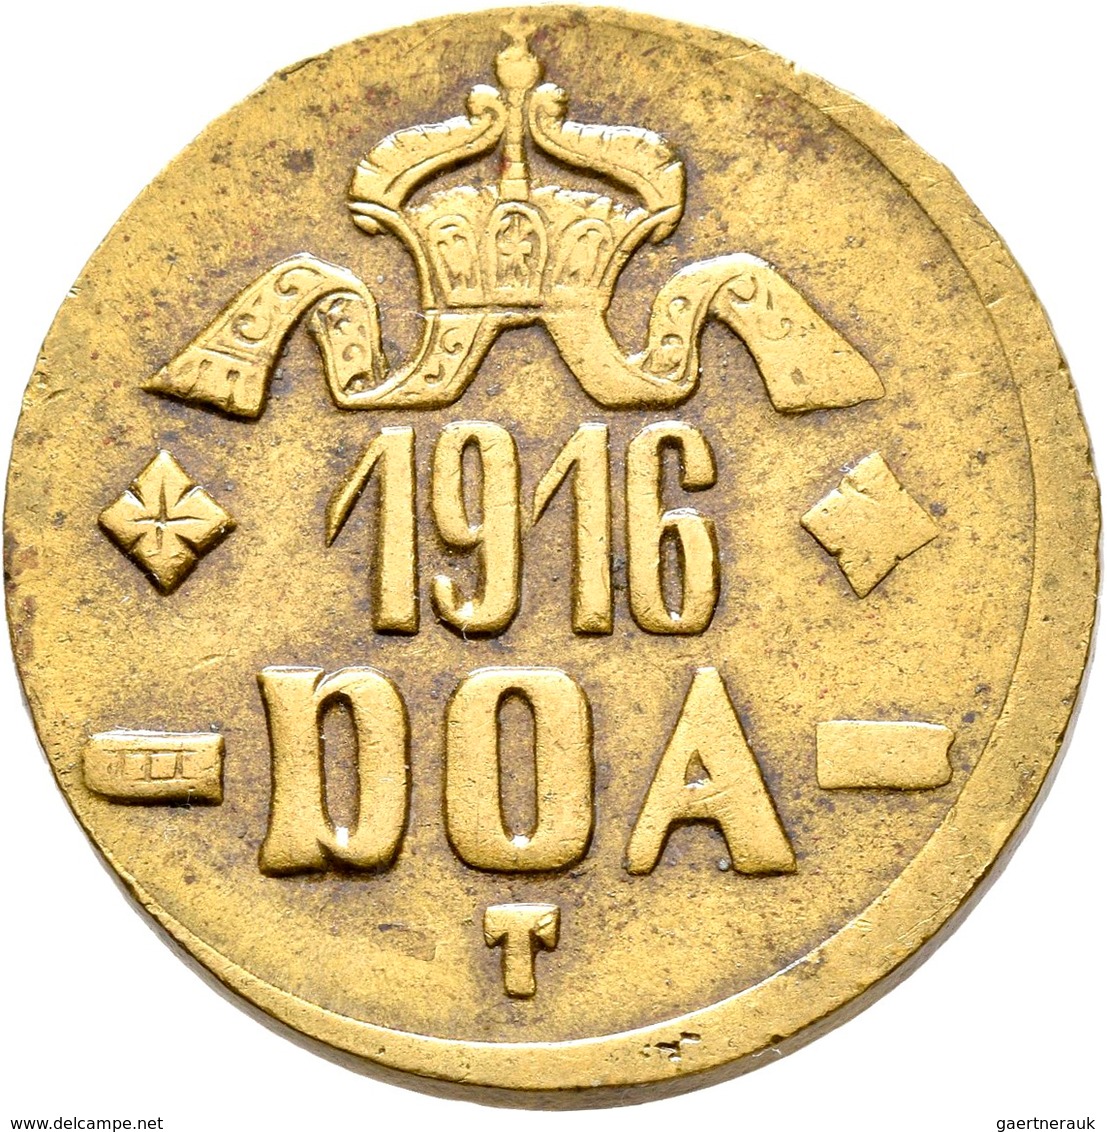 Deutsch-Ostafrika: Tabora, DOA: Lot 6 Münzen; 20 Heller 1916 T (4x) und 5 Heller 1616 T, zaponiert,